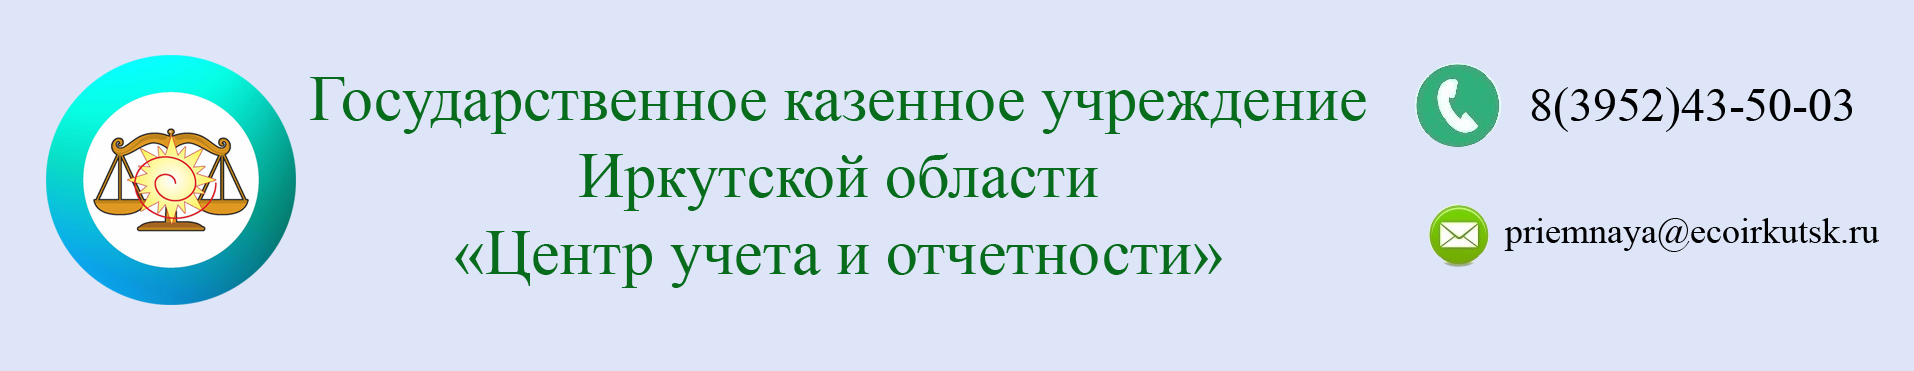 Государственное казенное учреждение Иркутской области "Центр учета и отчетности"